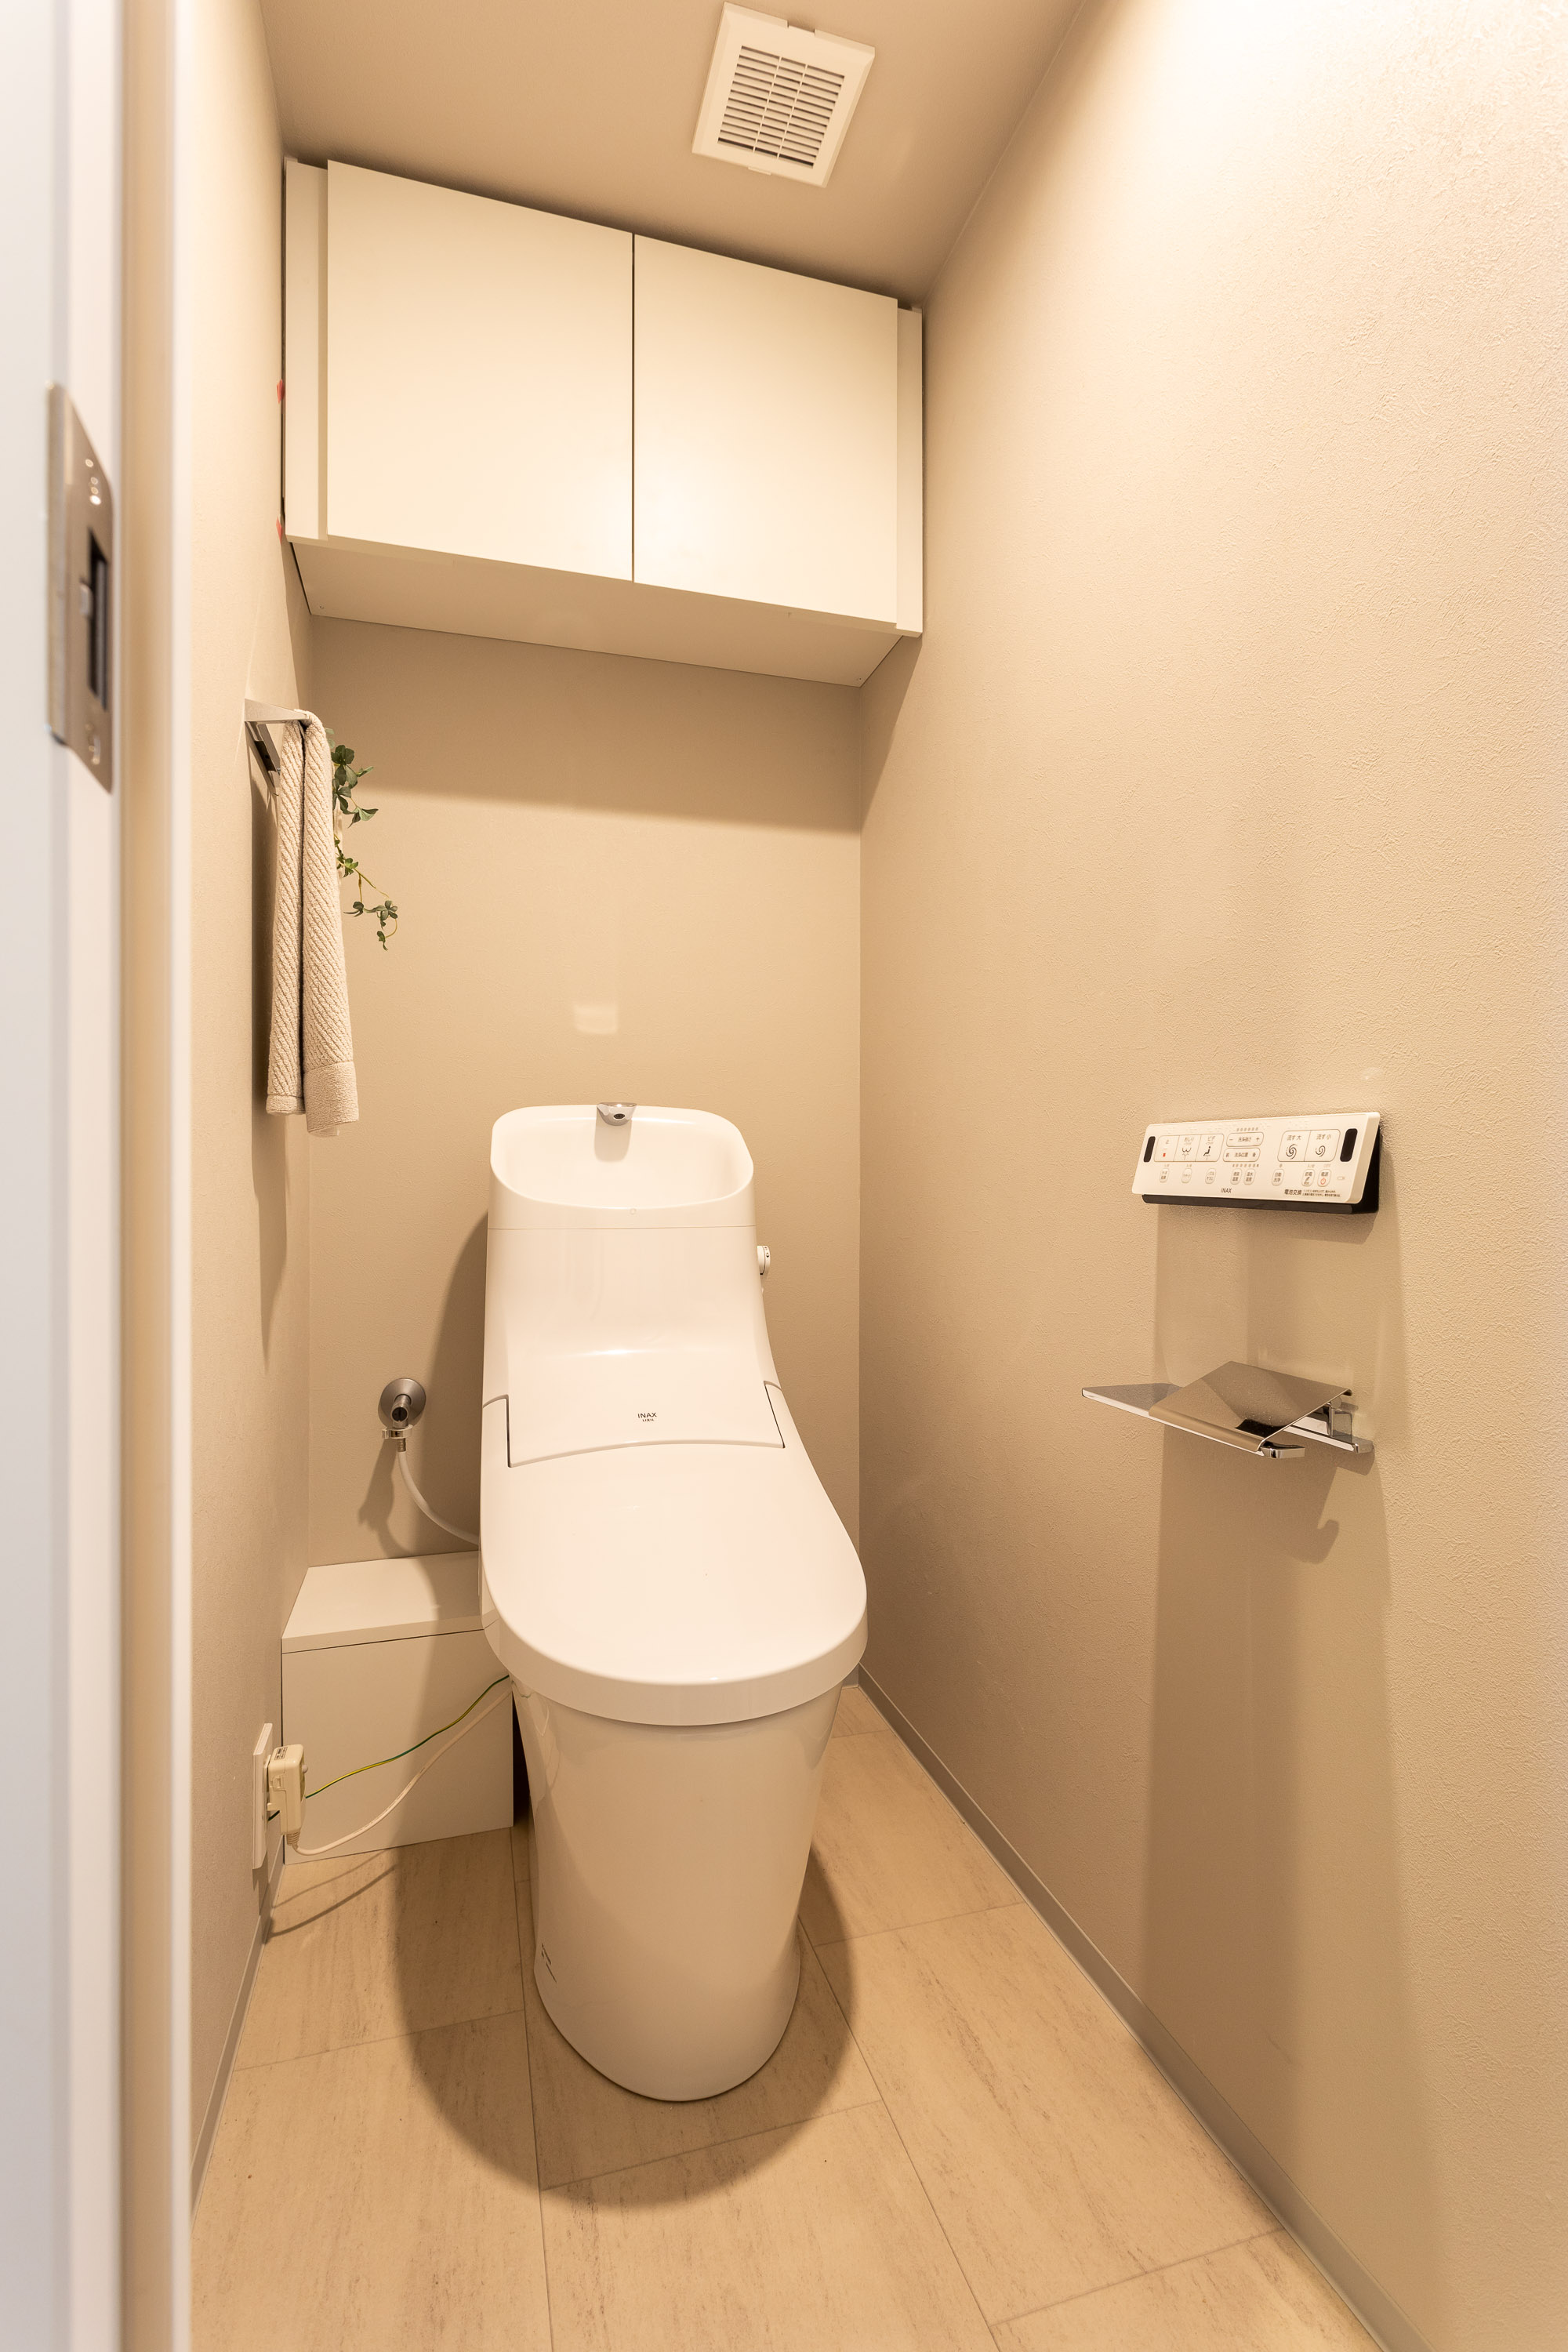 温水洗浄便座付トイレ。上部には収納スペースを設置しており、トイレットペーパーや掃除用品をしまえます。